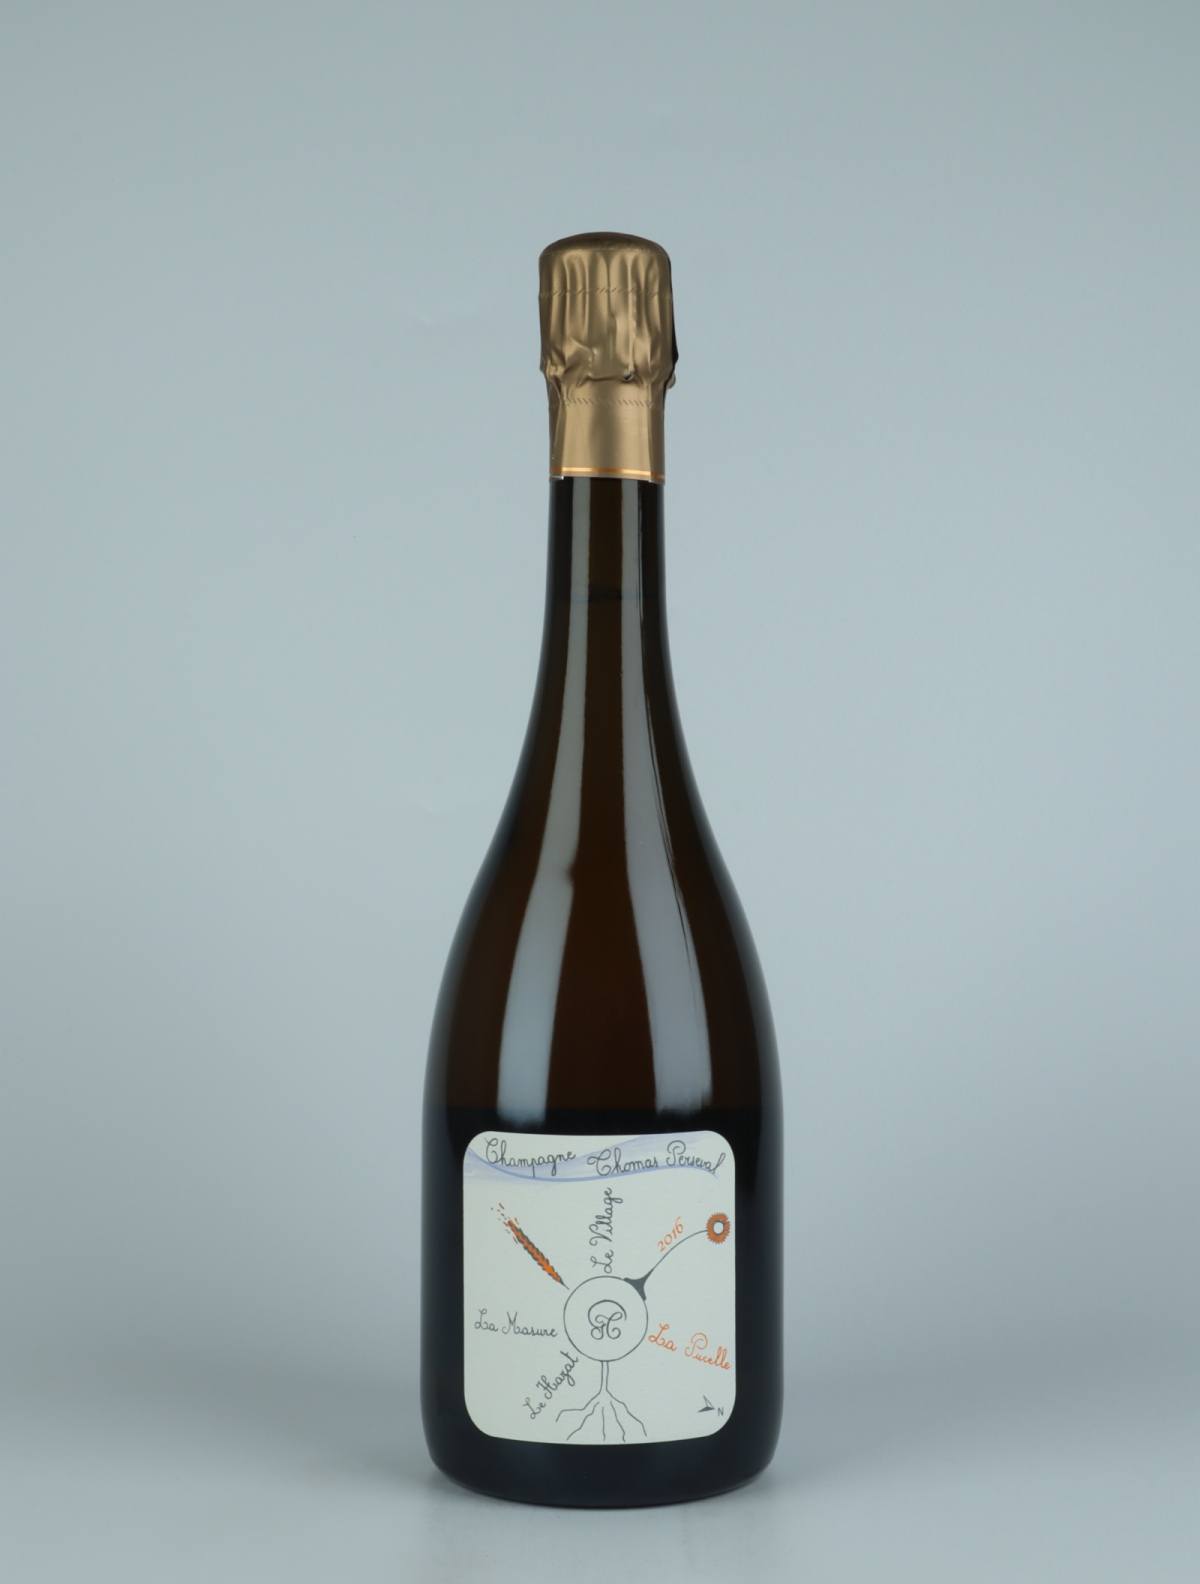 En flaske 2016 Chamery 1. Cru - La Pucelle Mousserende fra Thomas Perseval, Champagne i Frankrig